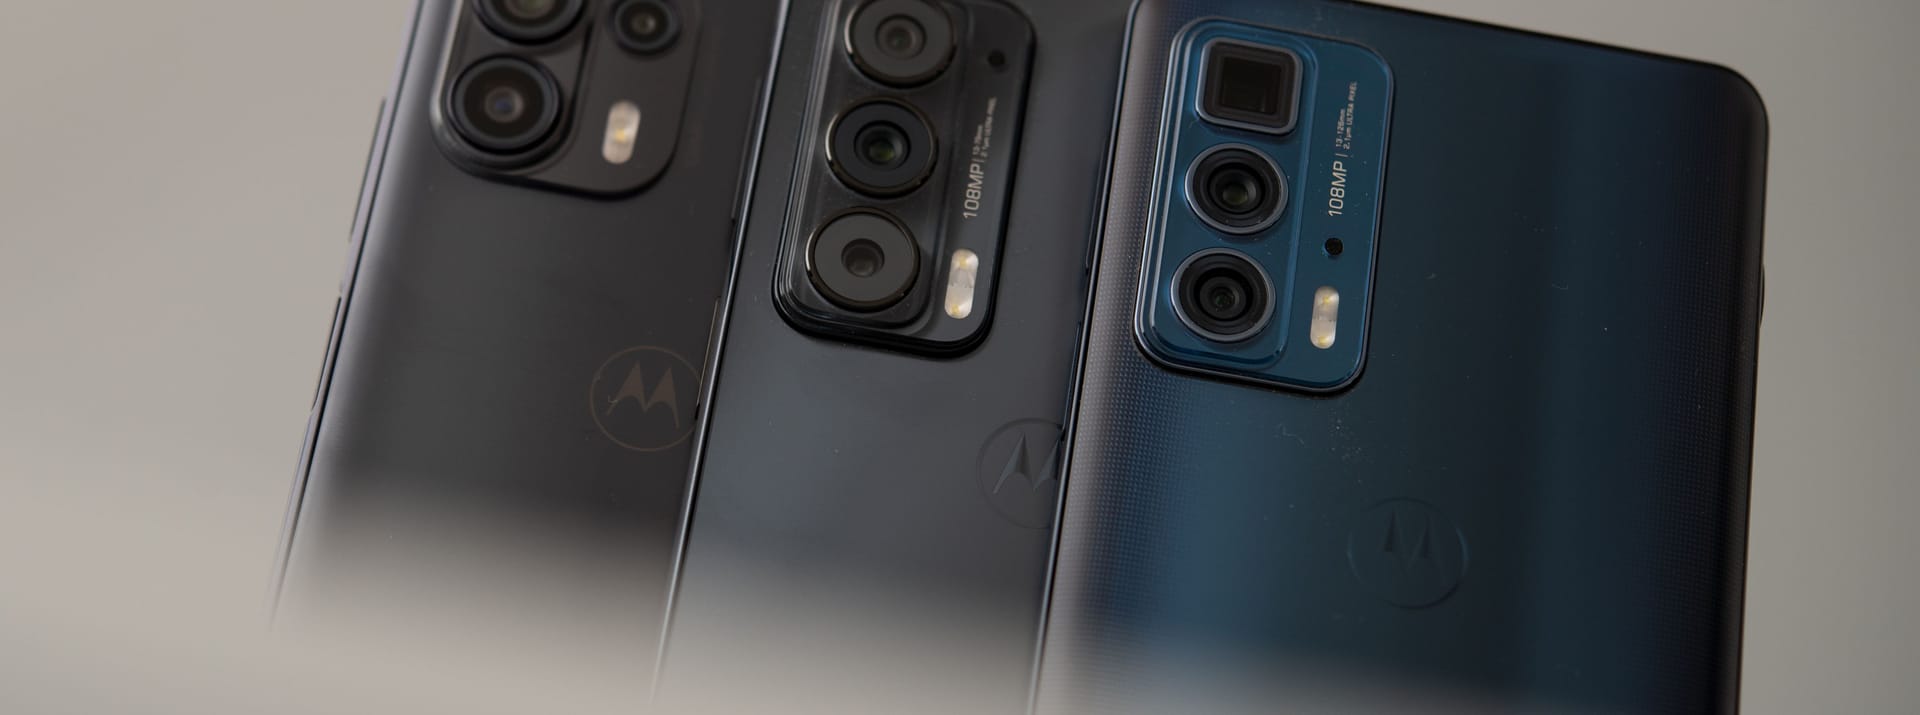 Drei Smartphones für verschiedene Ansprüche: Das Motorola Edge 20 Lite (links), das Edge 20 (Mitte) und das Edge 20 Pro (rechts).